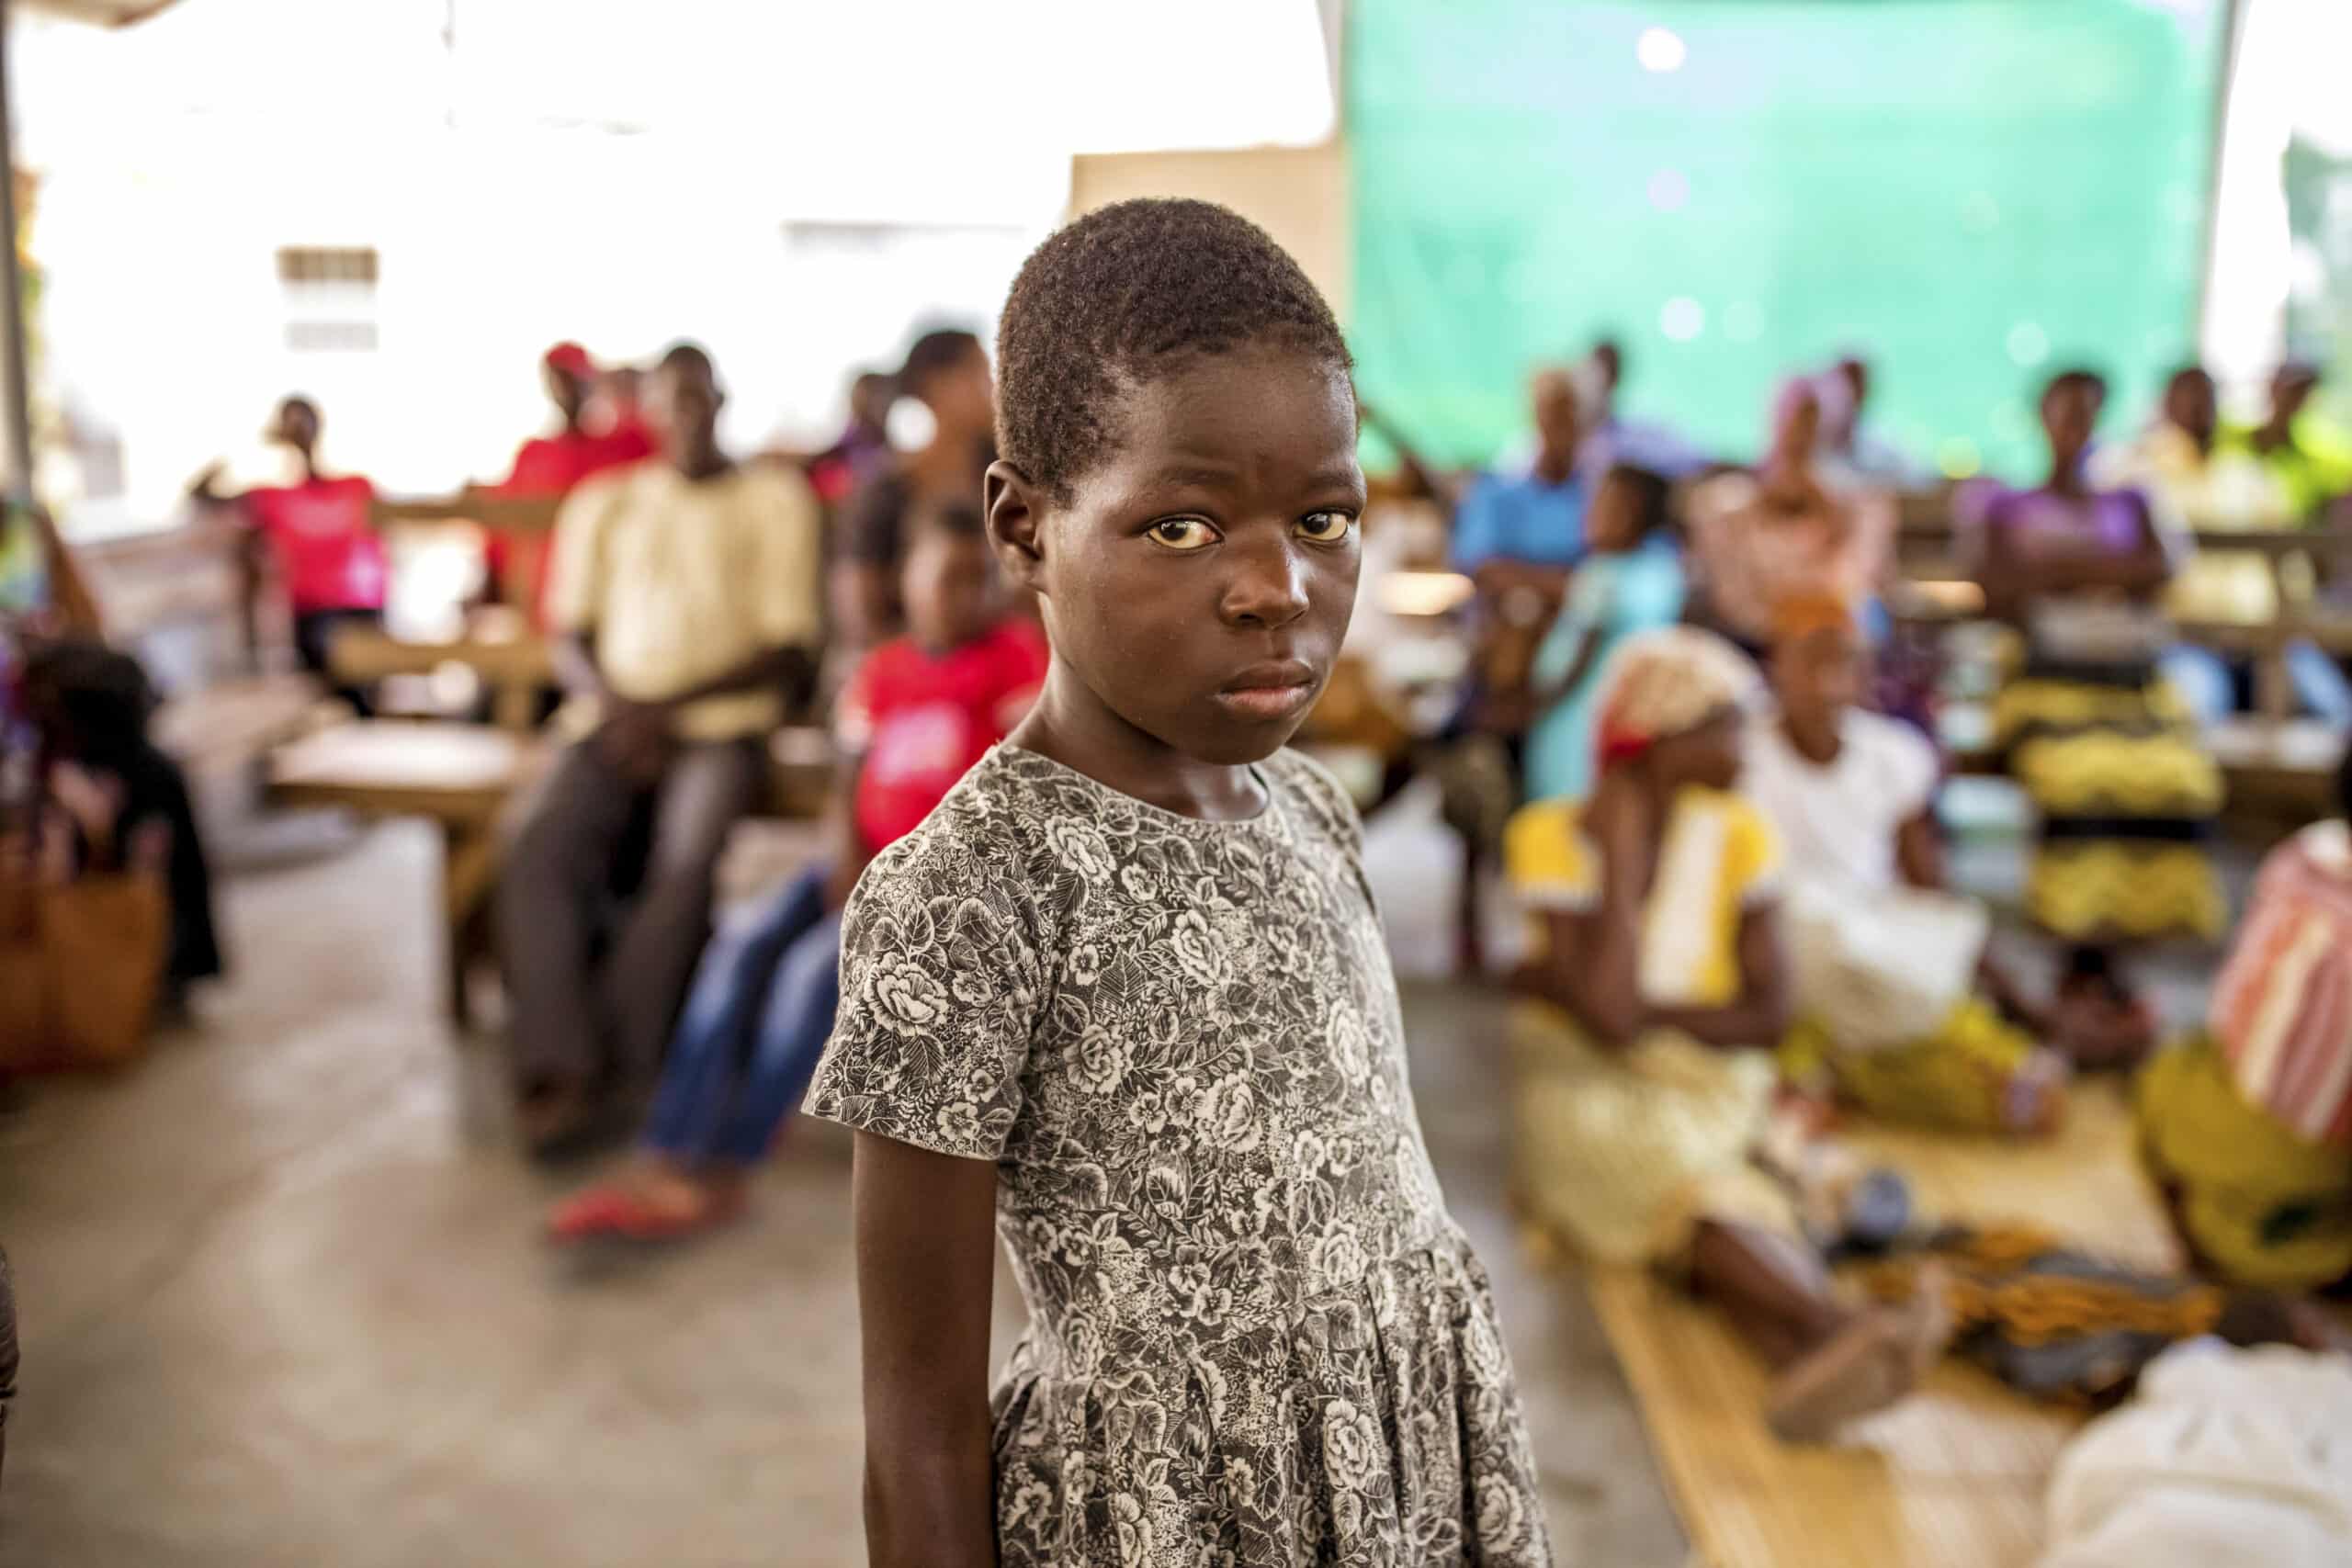 Im Fokus steht ein junges afrikanisches Mädchen, das ernst in die Kamera blickt. Im Hintergrund sind unscharfe Menschen zu sehen, die in einer zeltartigen Konstruktion sitzen. © Fotografie Tomas Rodriguez